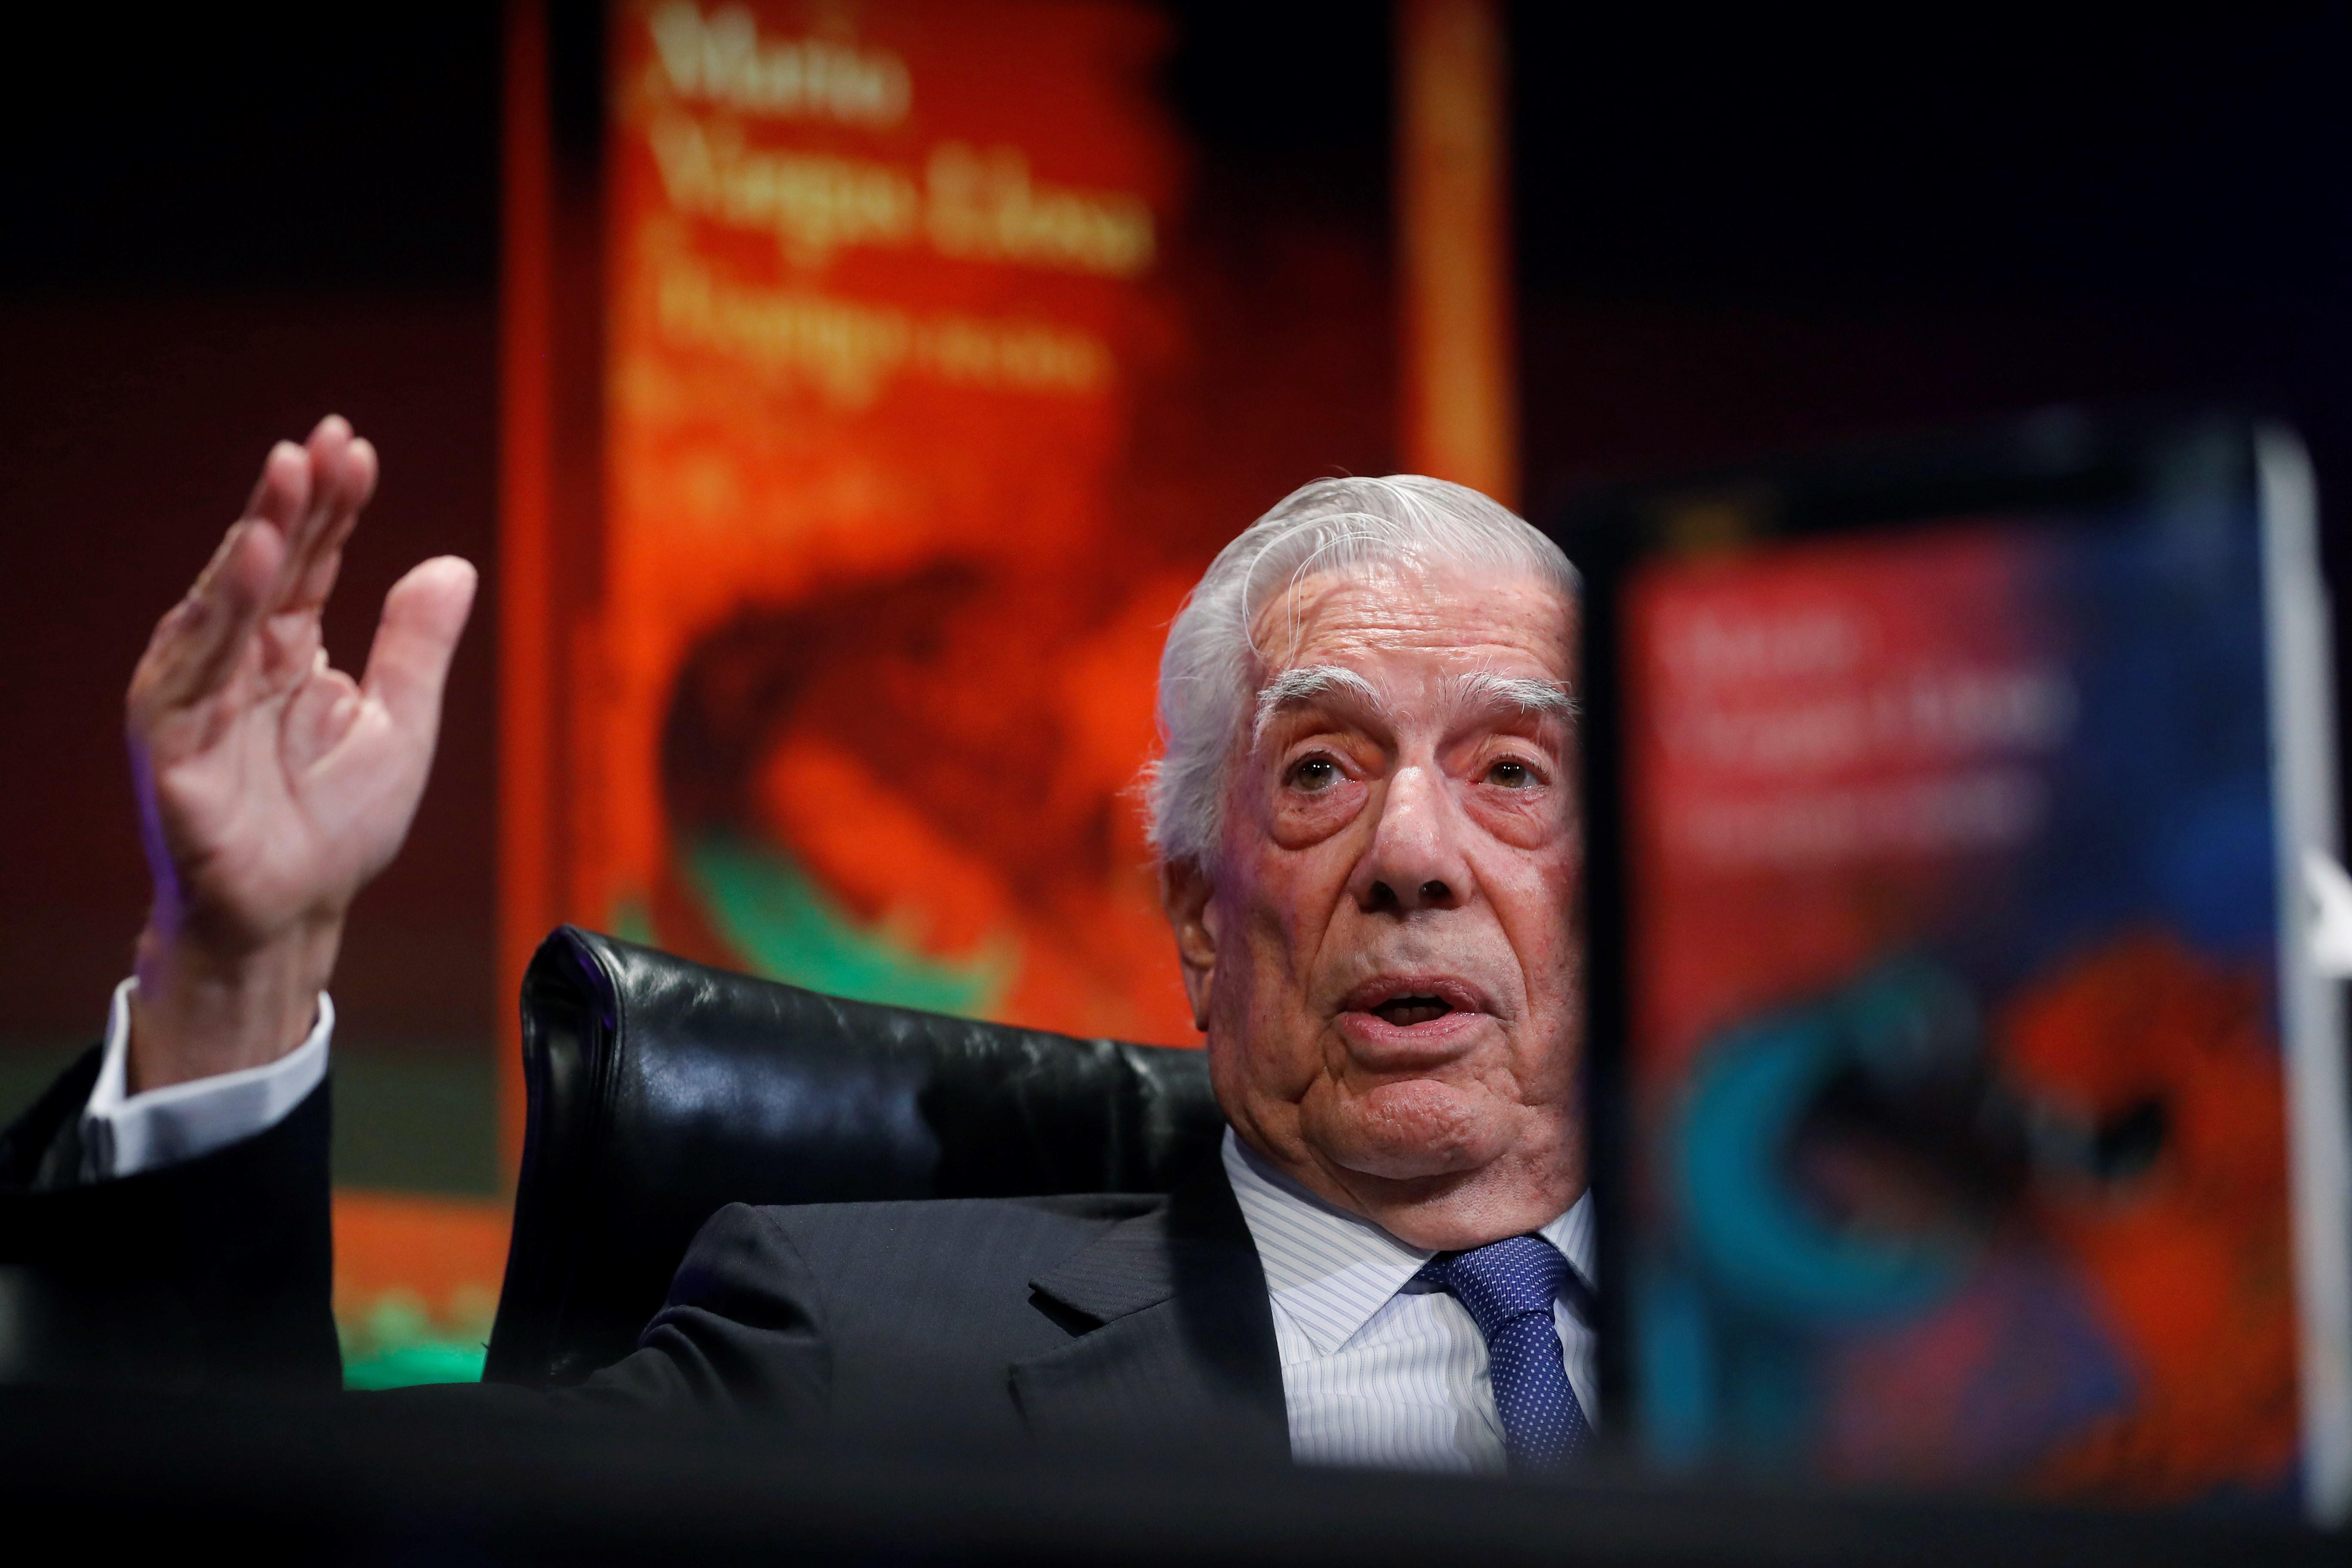 El Premio Nobel de Literatura, Mario Vargas Llosa, durante la presentación este martes de su nueva novela, "Tiempos recios". (Foto Prensa Libre: EFE)